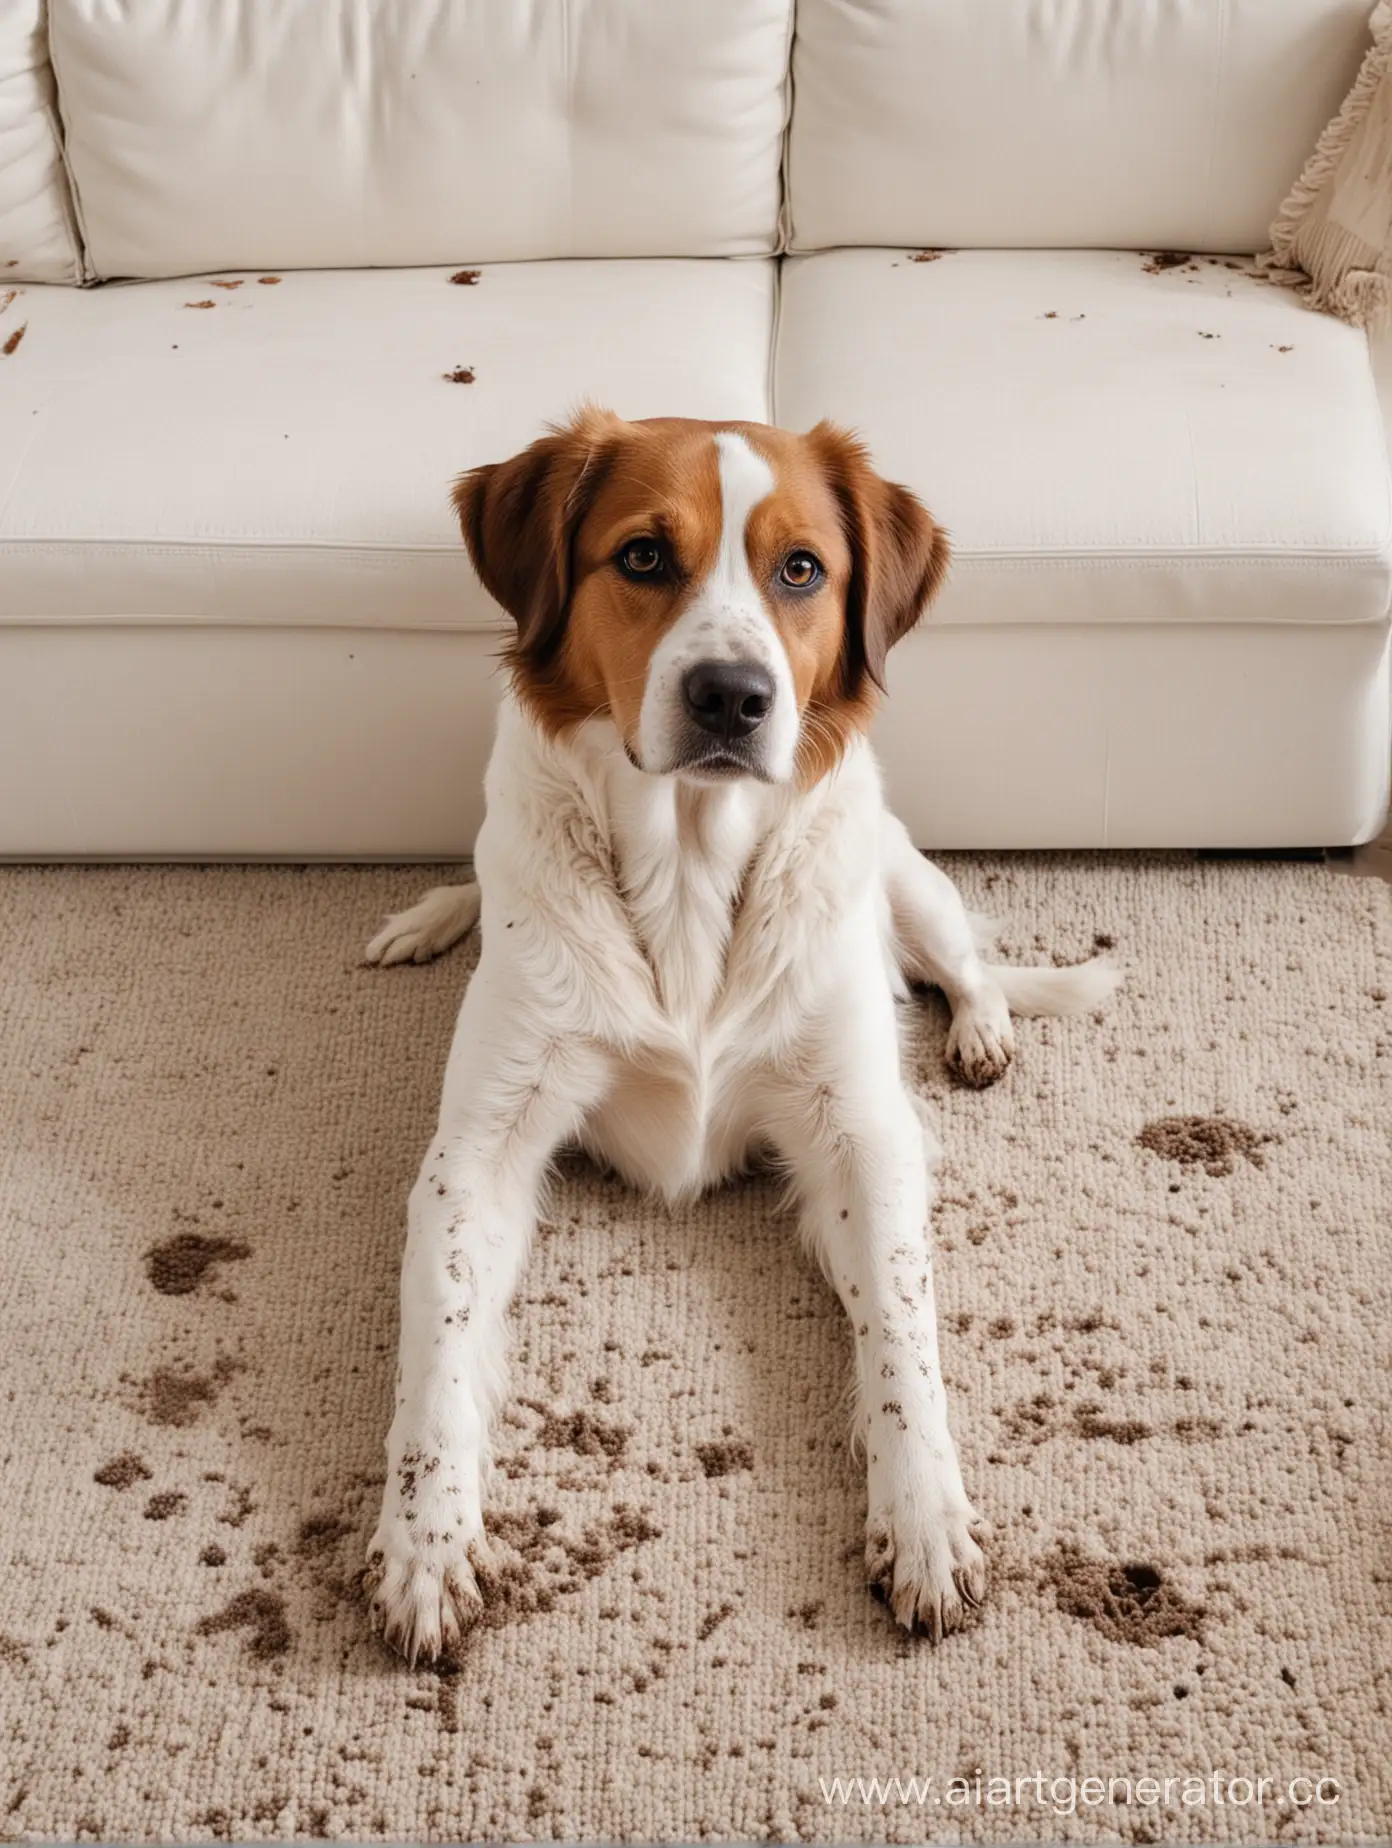 Собака с грязными лапами и виноватом видом улеглась на белый диван и испачкала его своими лапами. Видны следы грязи и следов на коврике перед диваном.